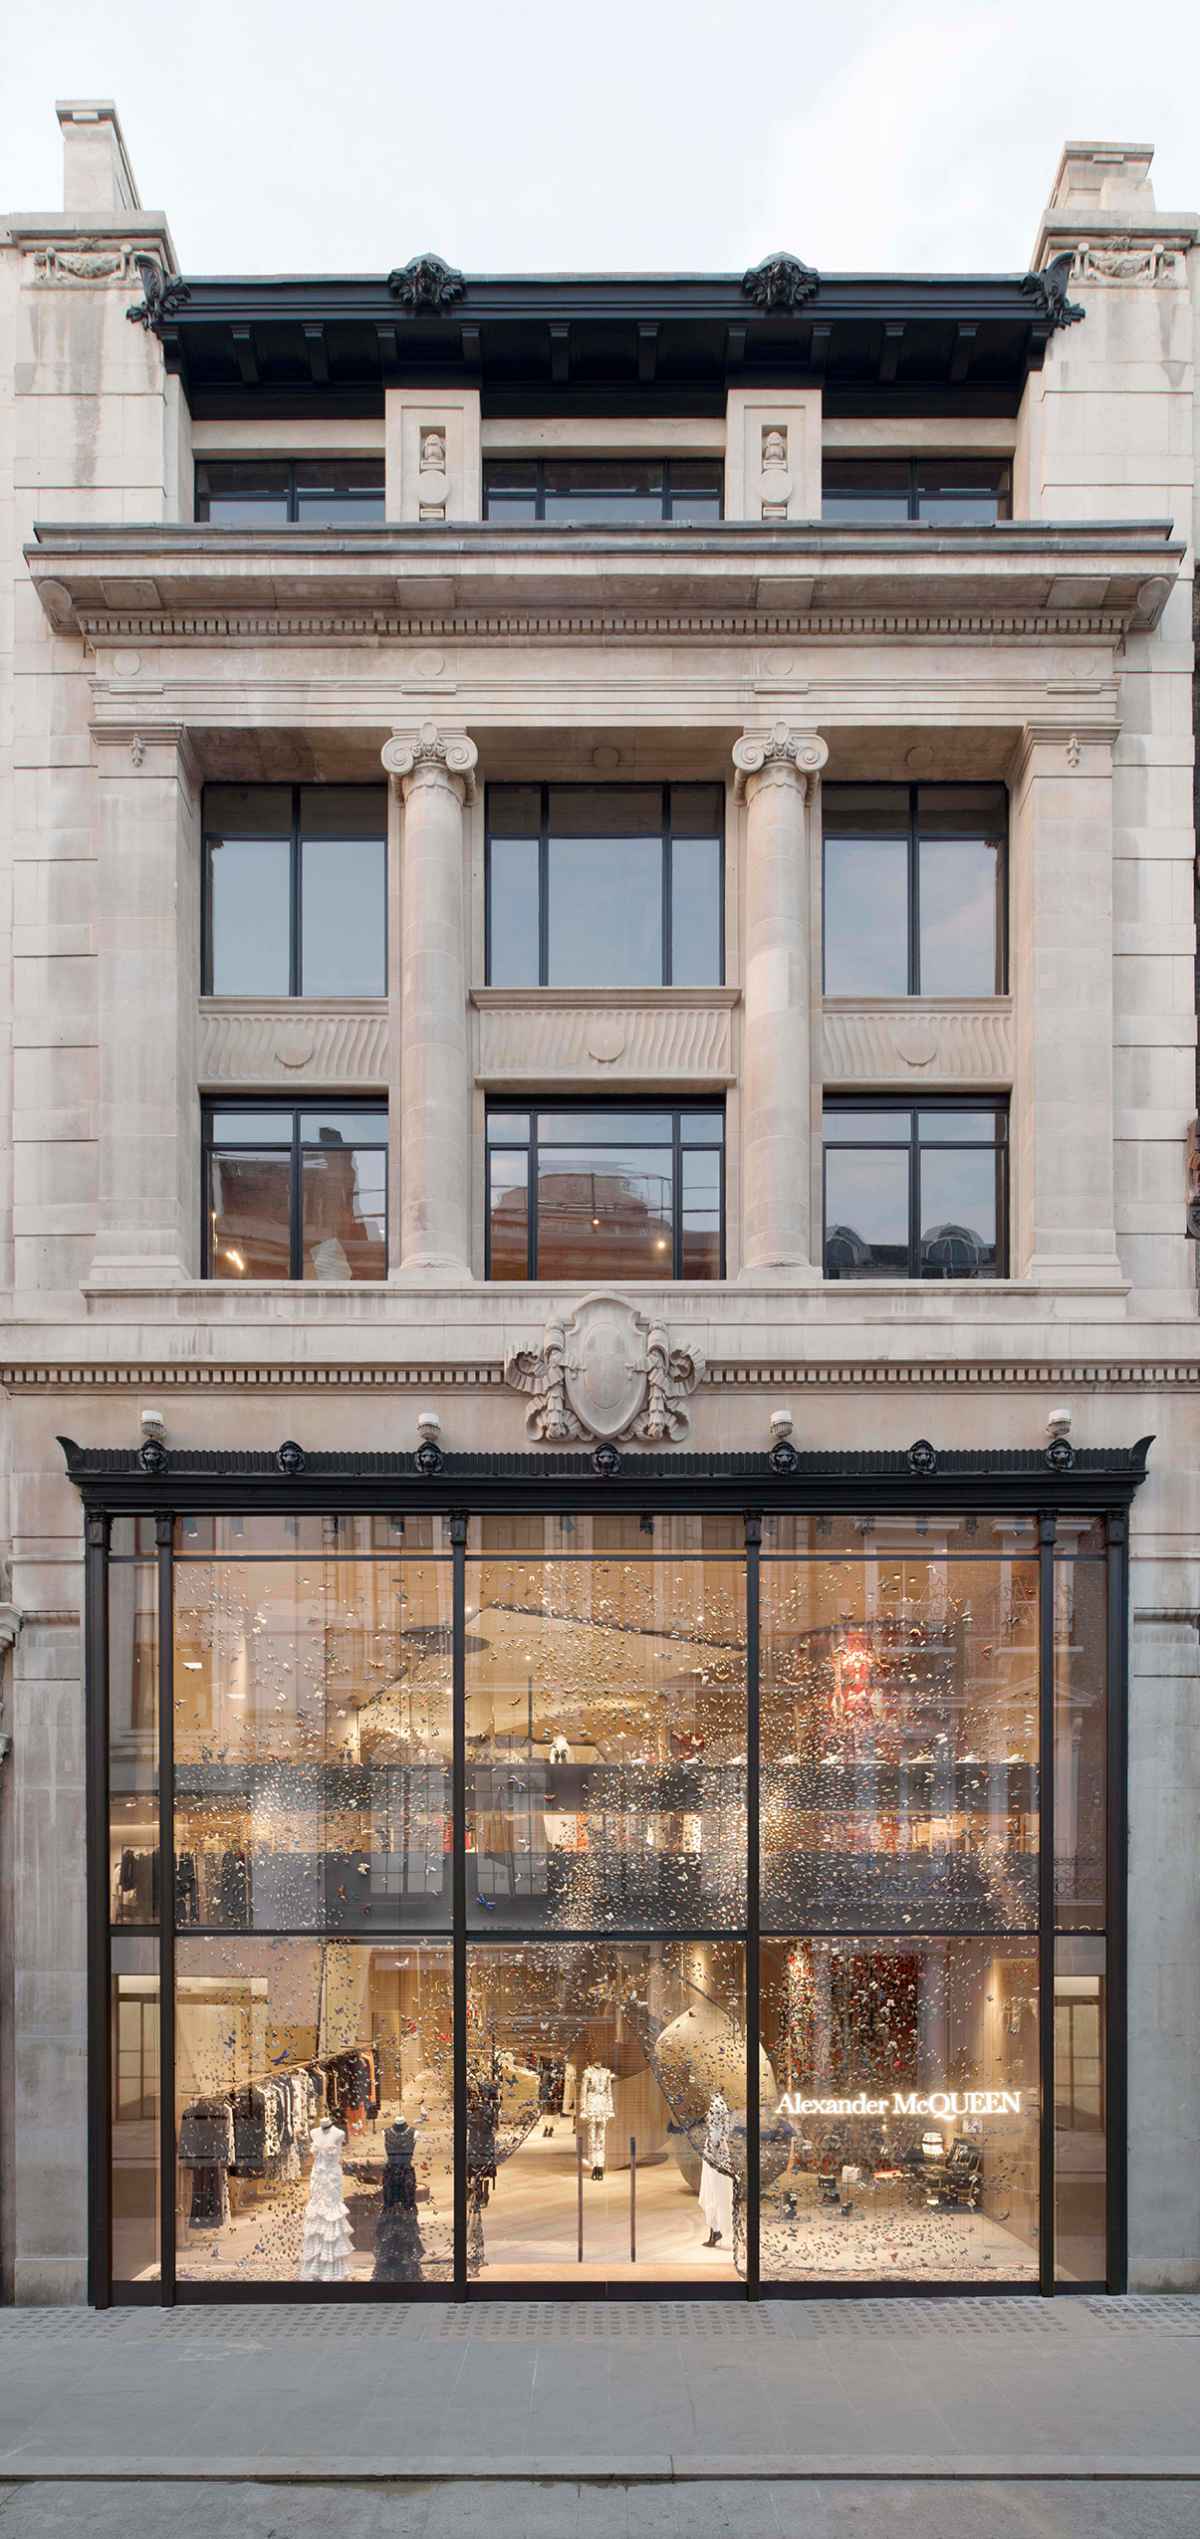 Alexander McQueen stores